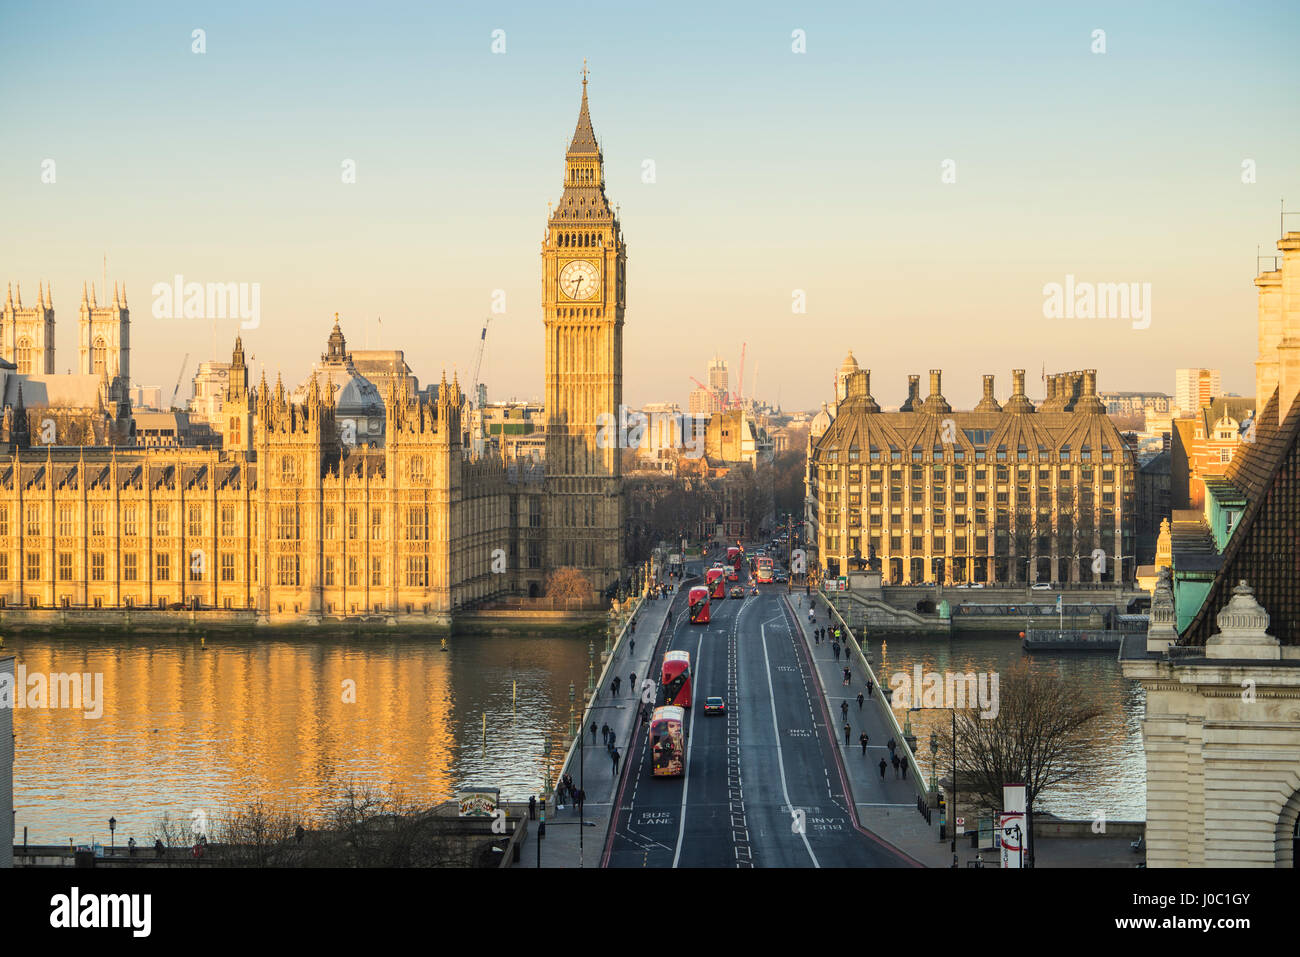 High angle view of Big Ben, le Palais de Westminster, Site du patrimoine mondial de l'UNESCO, et le pont de Westminster, Londres, Angleterre, Royaume-Uni Banque D'Images